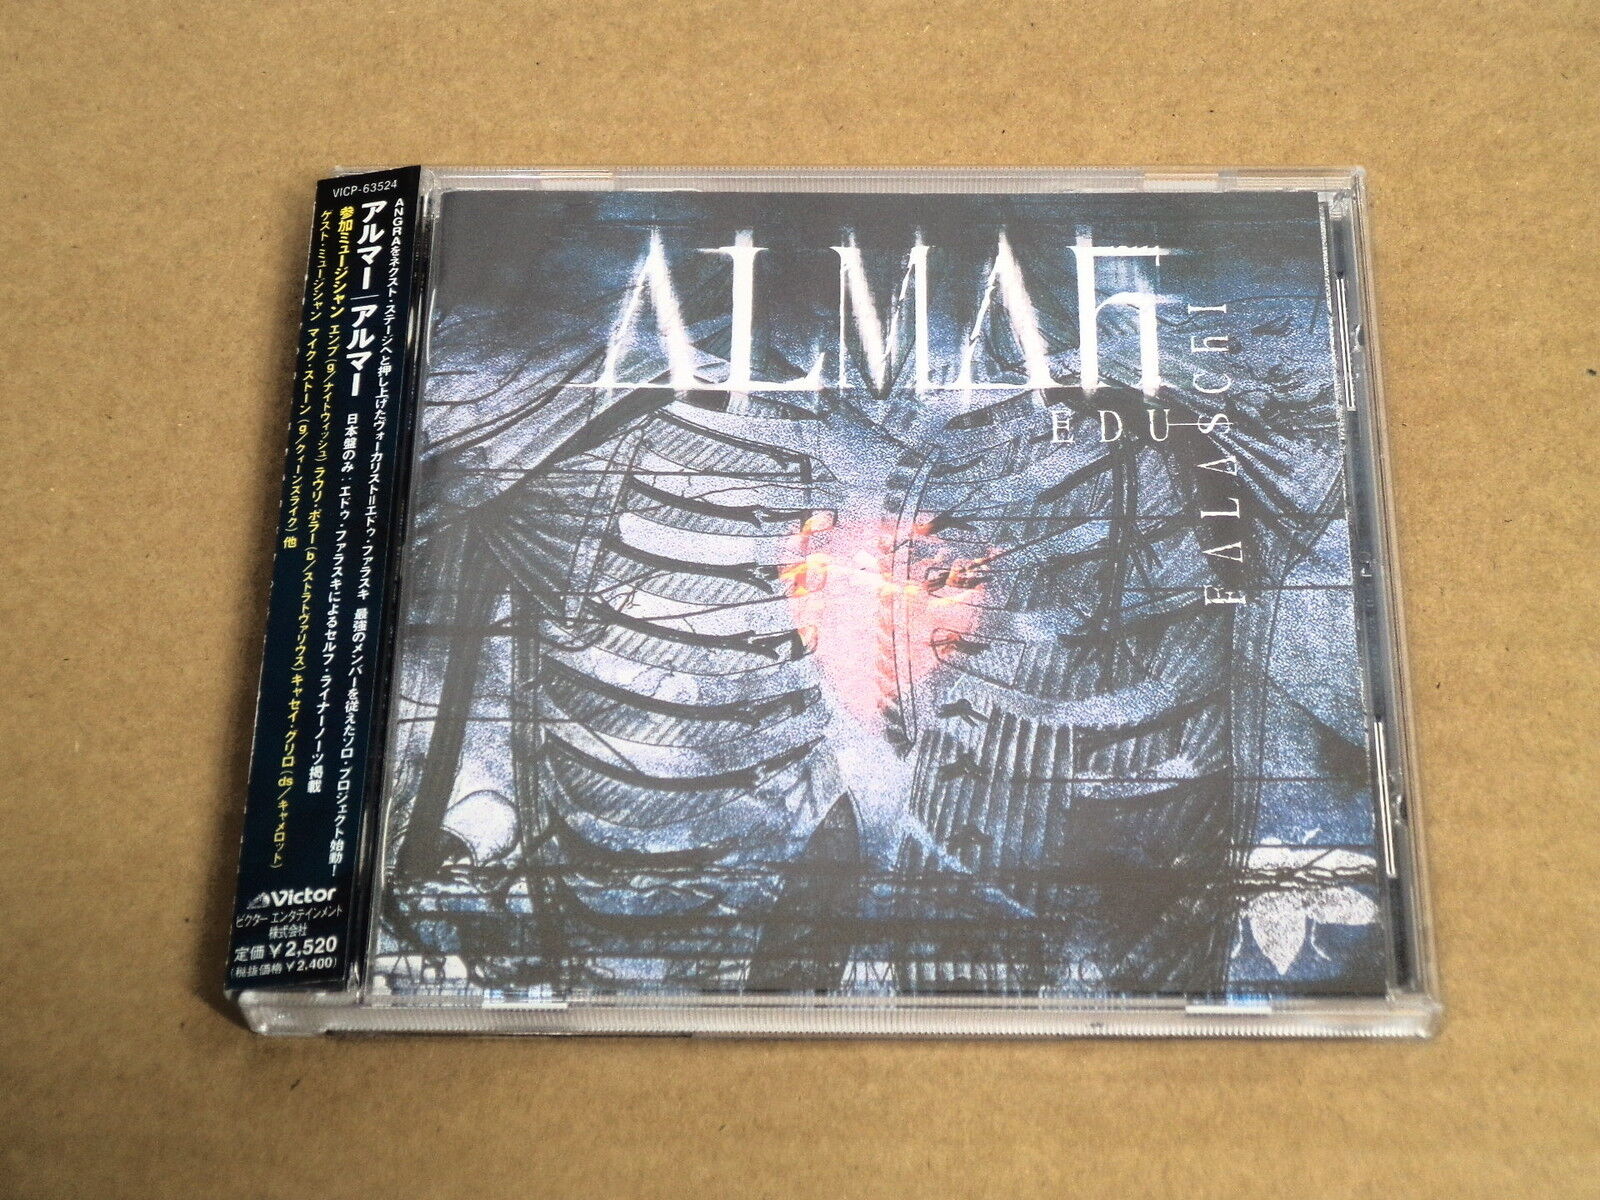 ALMAH / EDU FALASCHI VICP-63524 JAPAN CD w/OBI q548 angra nightwish stratovarius